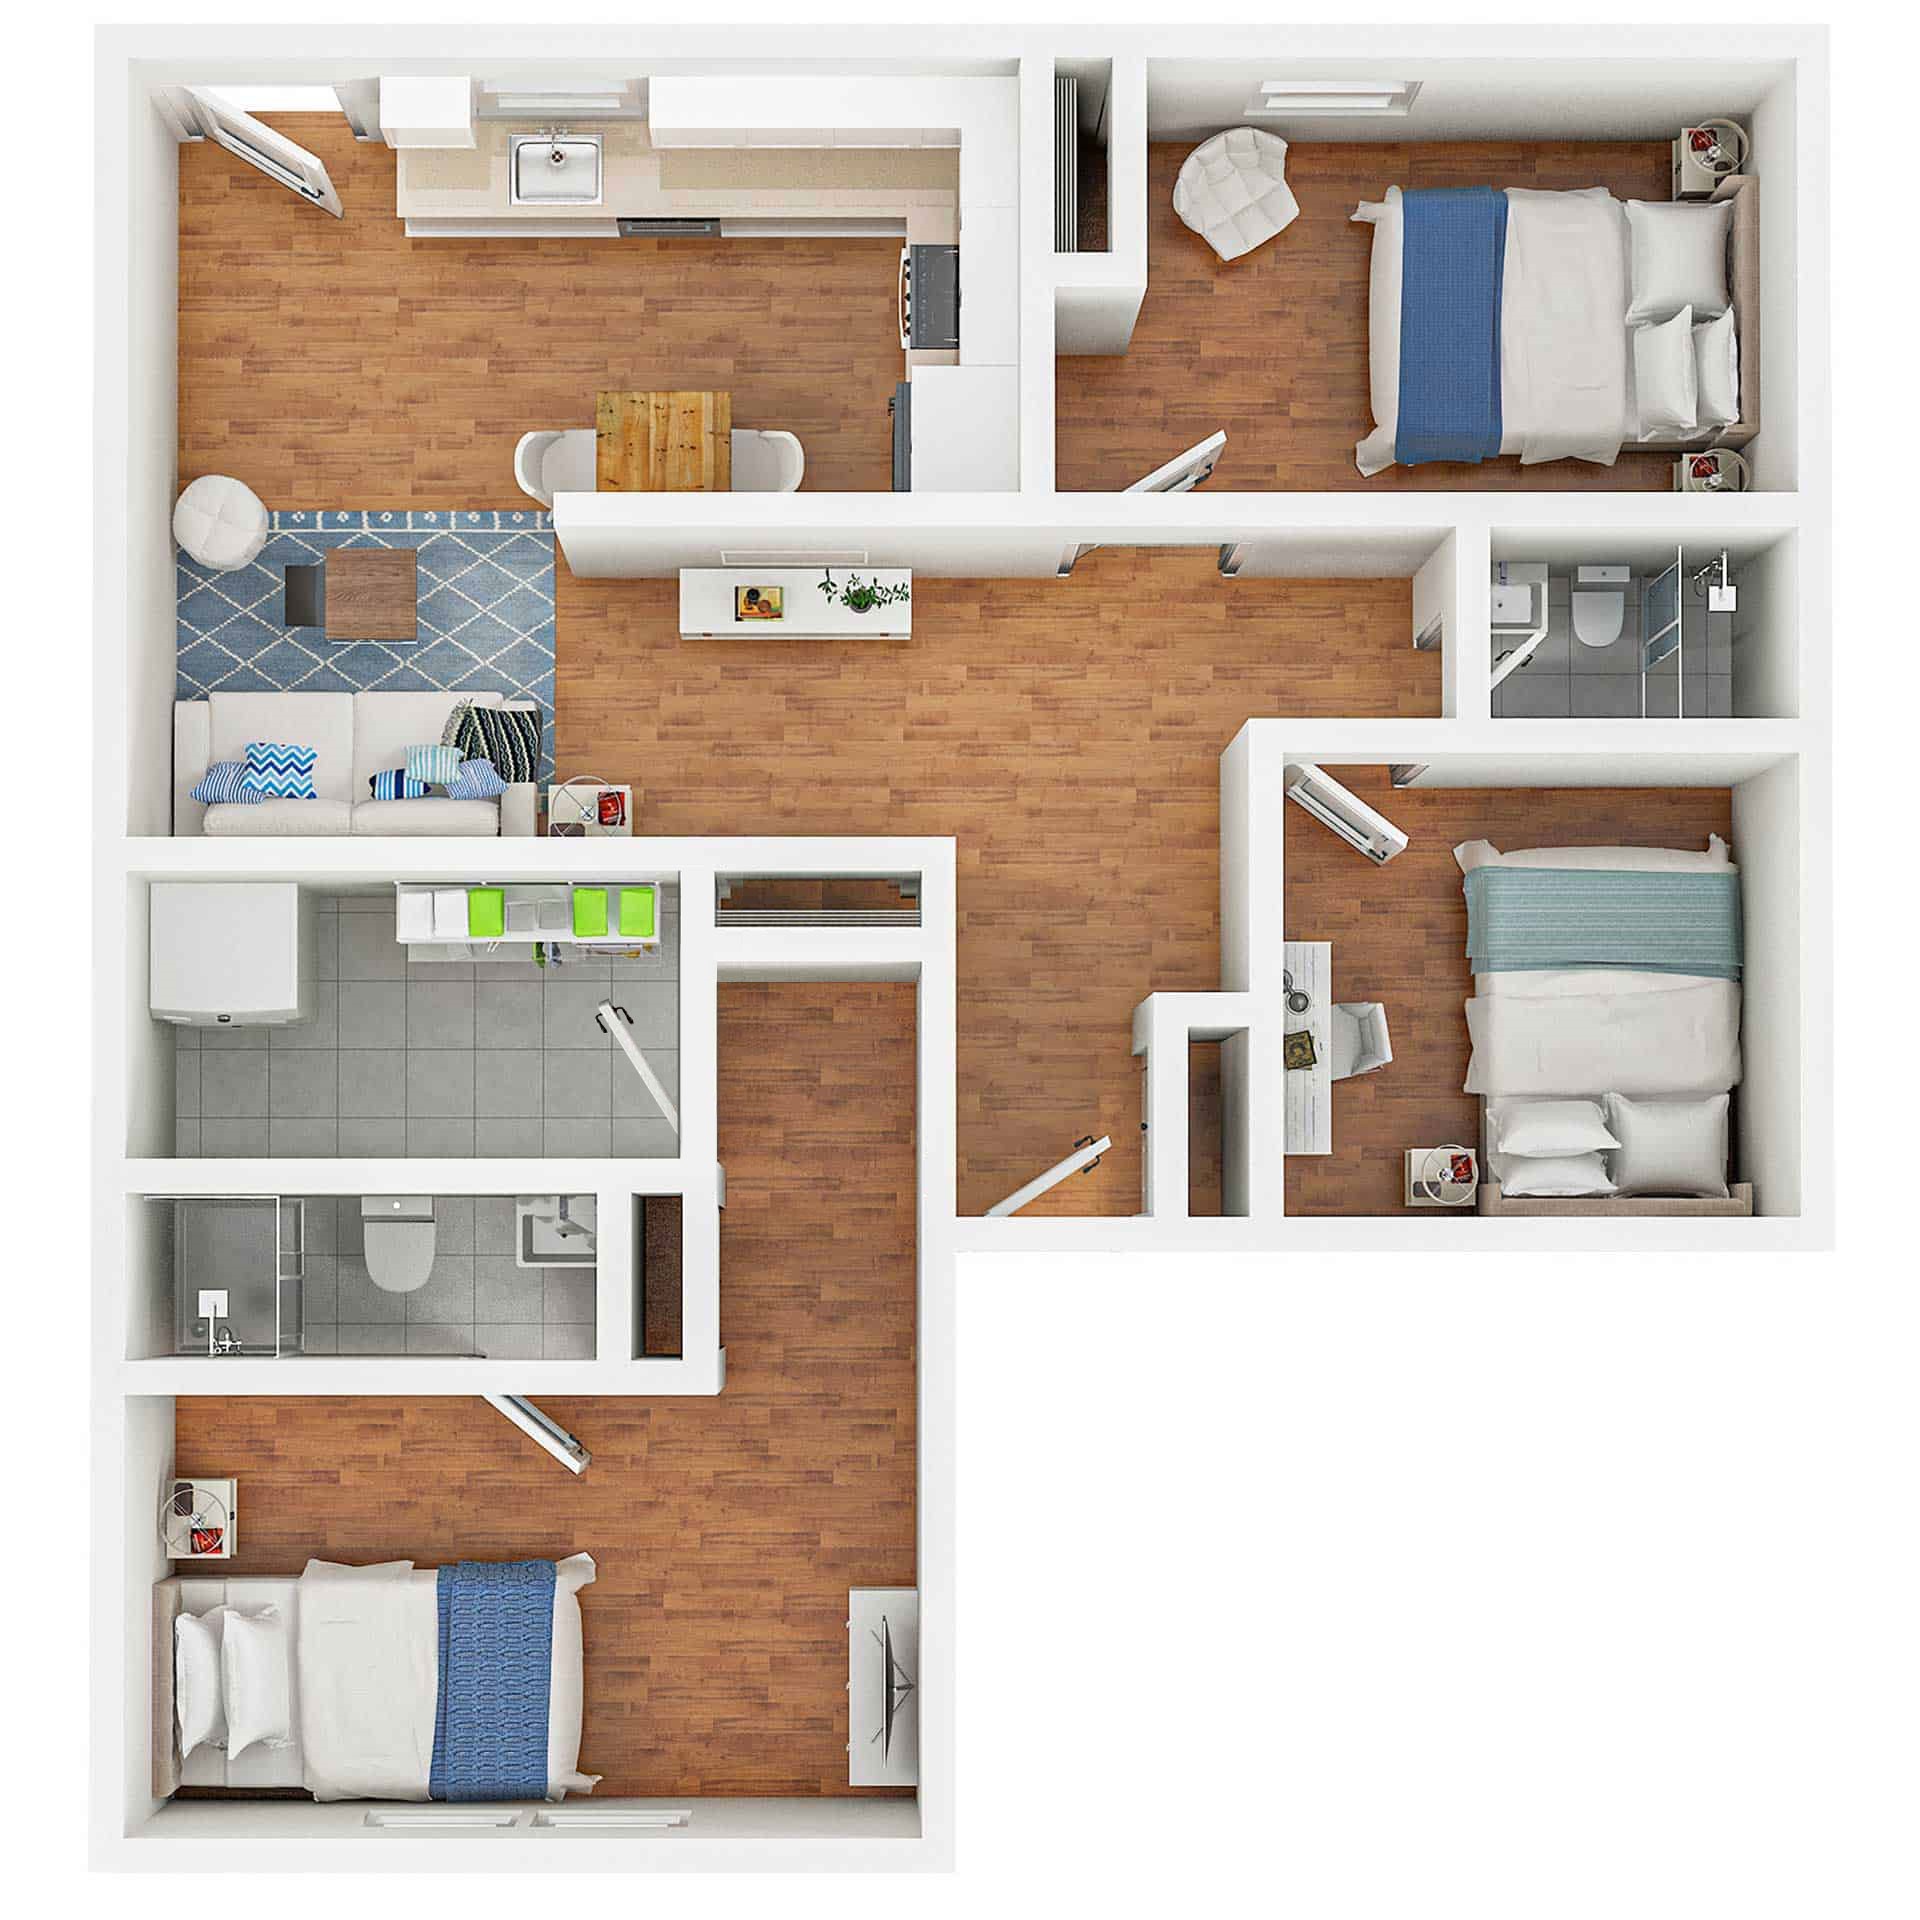 3 bedroom 3-d floor plan